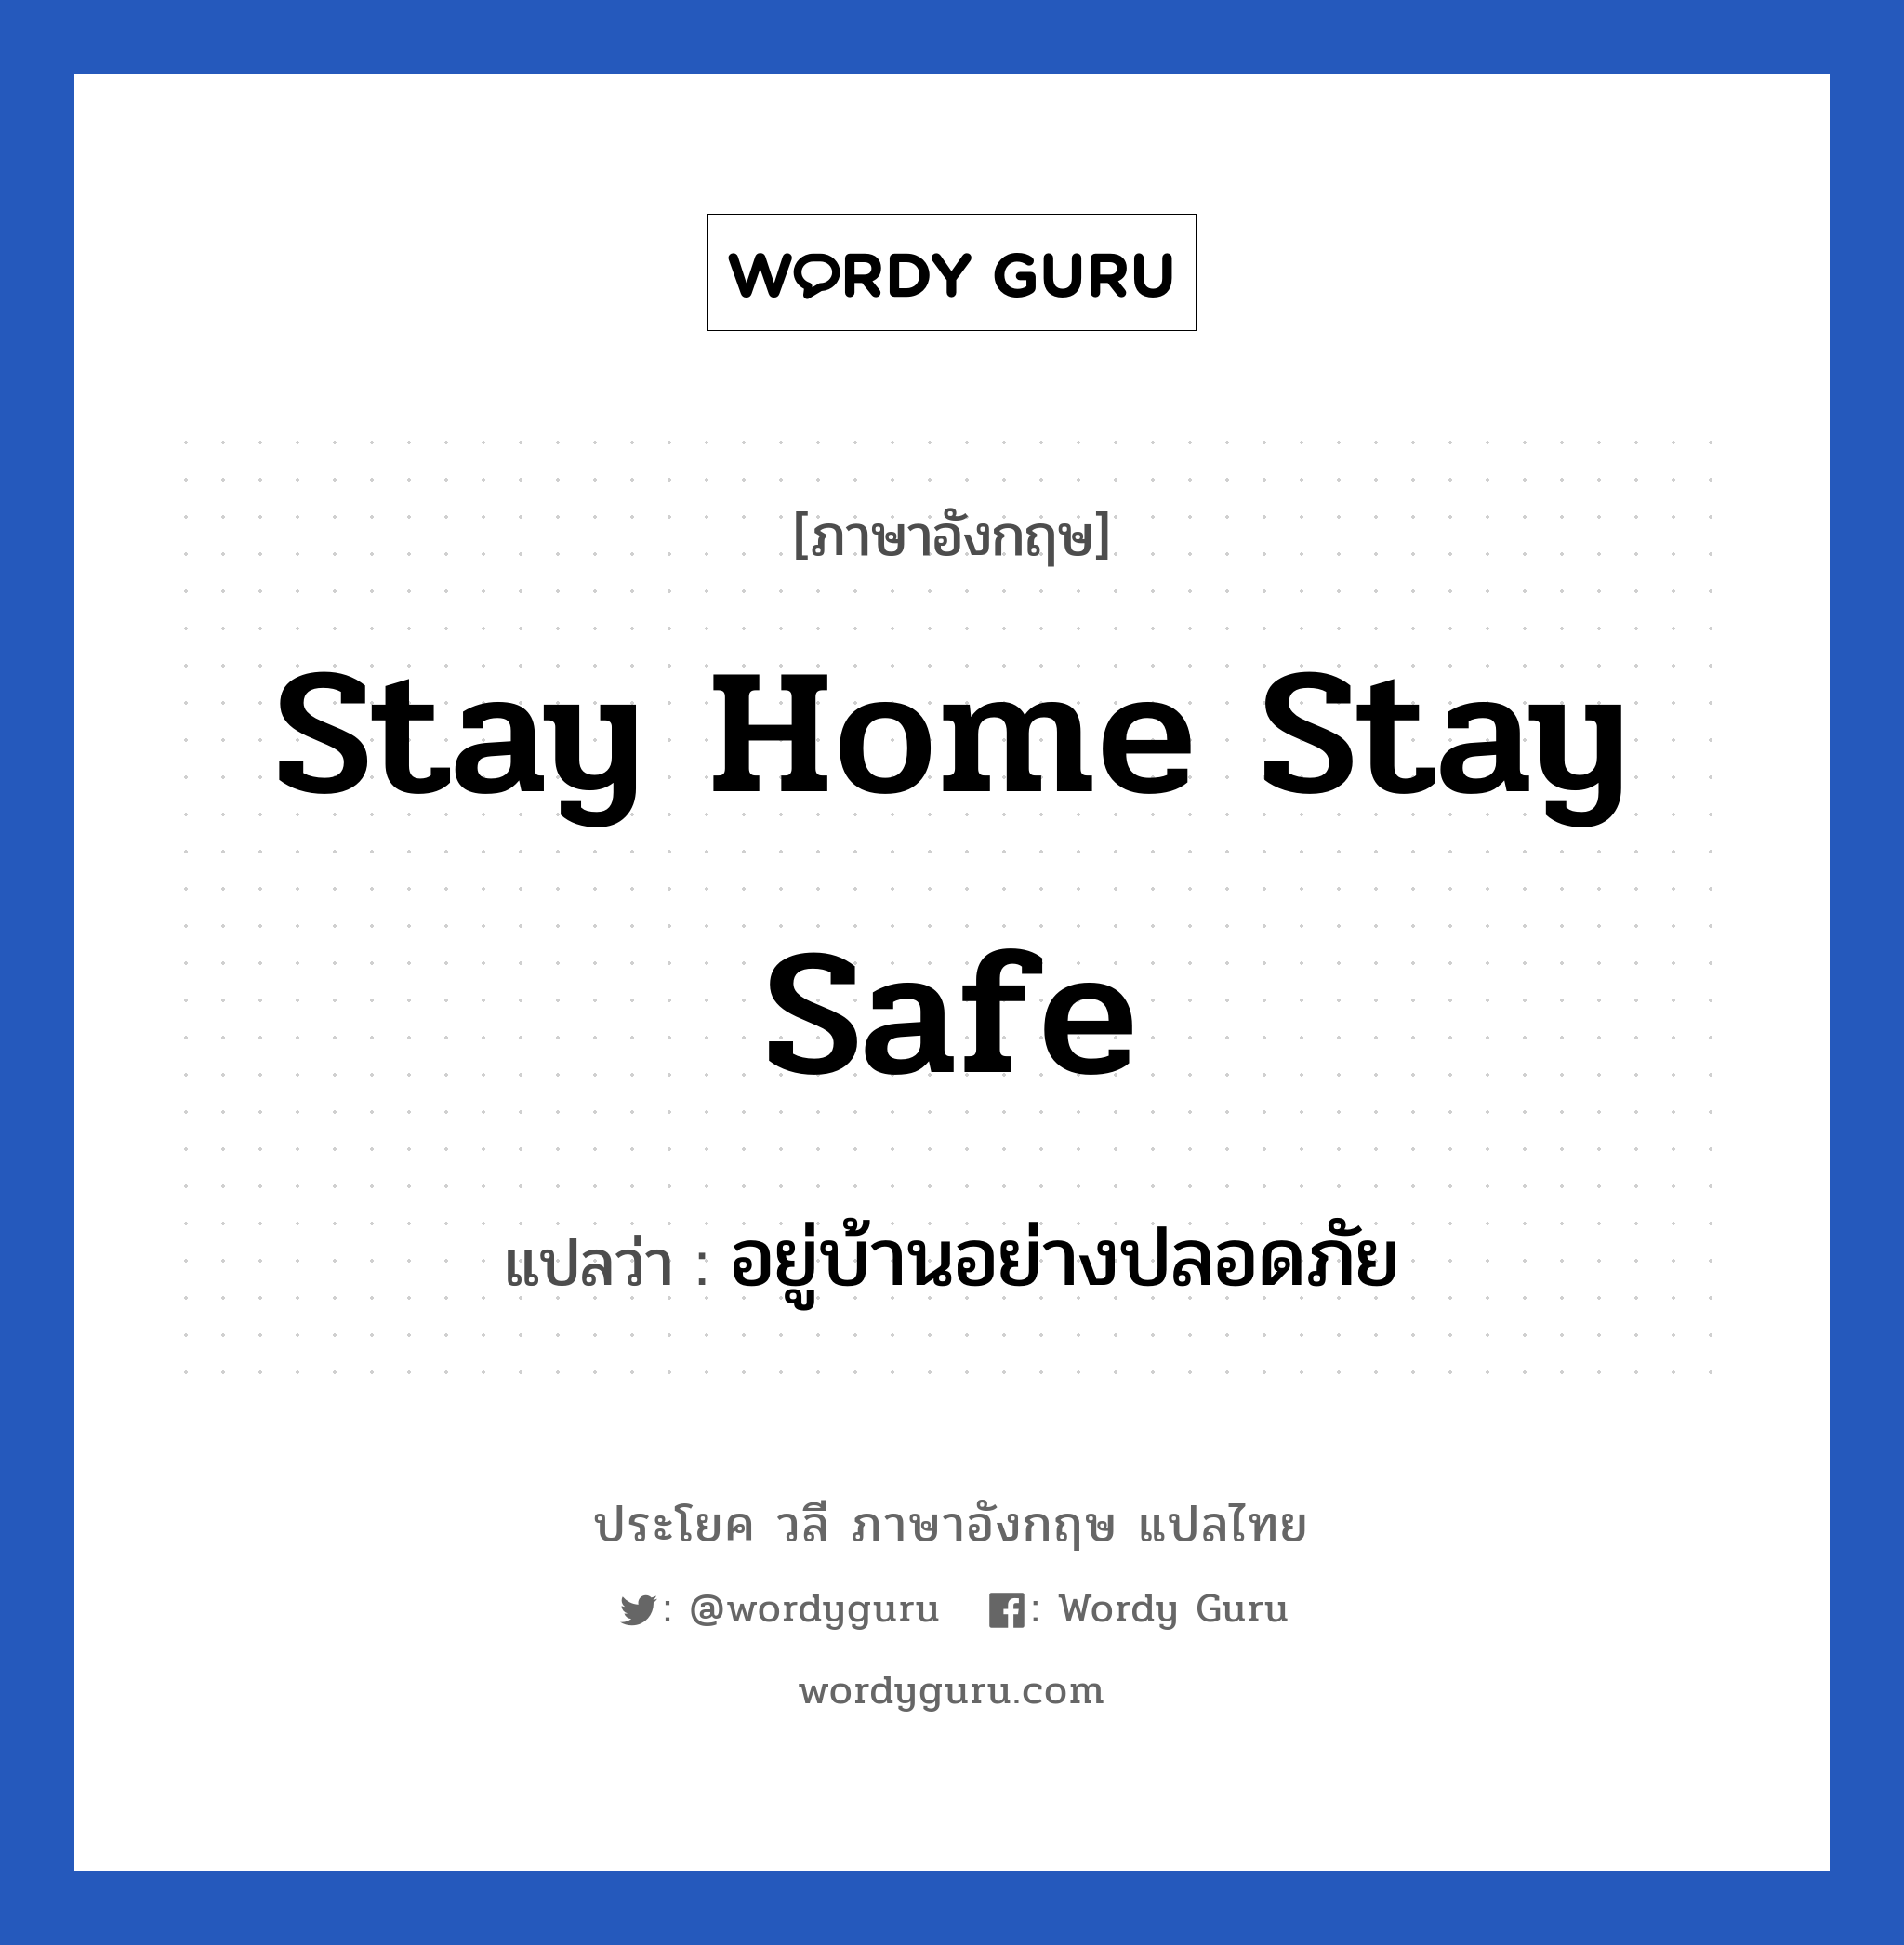 อยู่บ้านอย่างปลอดภัย ภาษาอังกฤษ?, วลีภาษาอังกฤษ อยู่บ้านอย่างปลอดภัย แปลว่า Stay home Stay safe